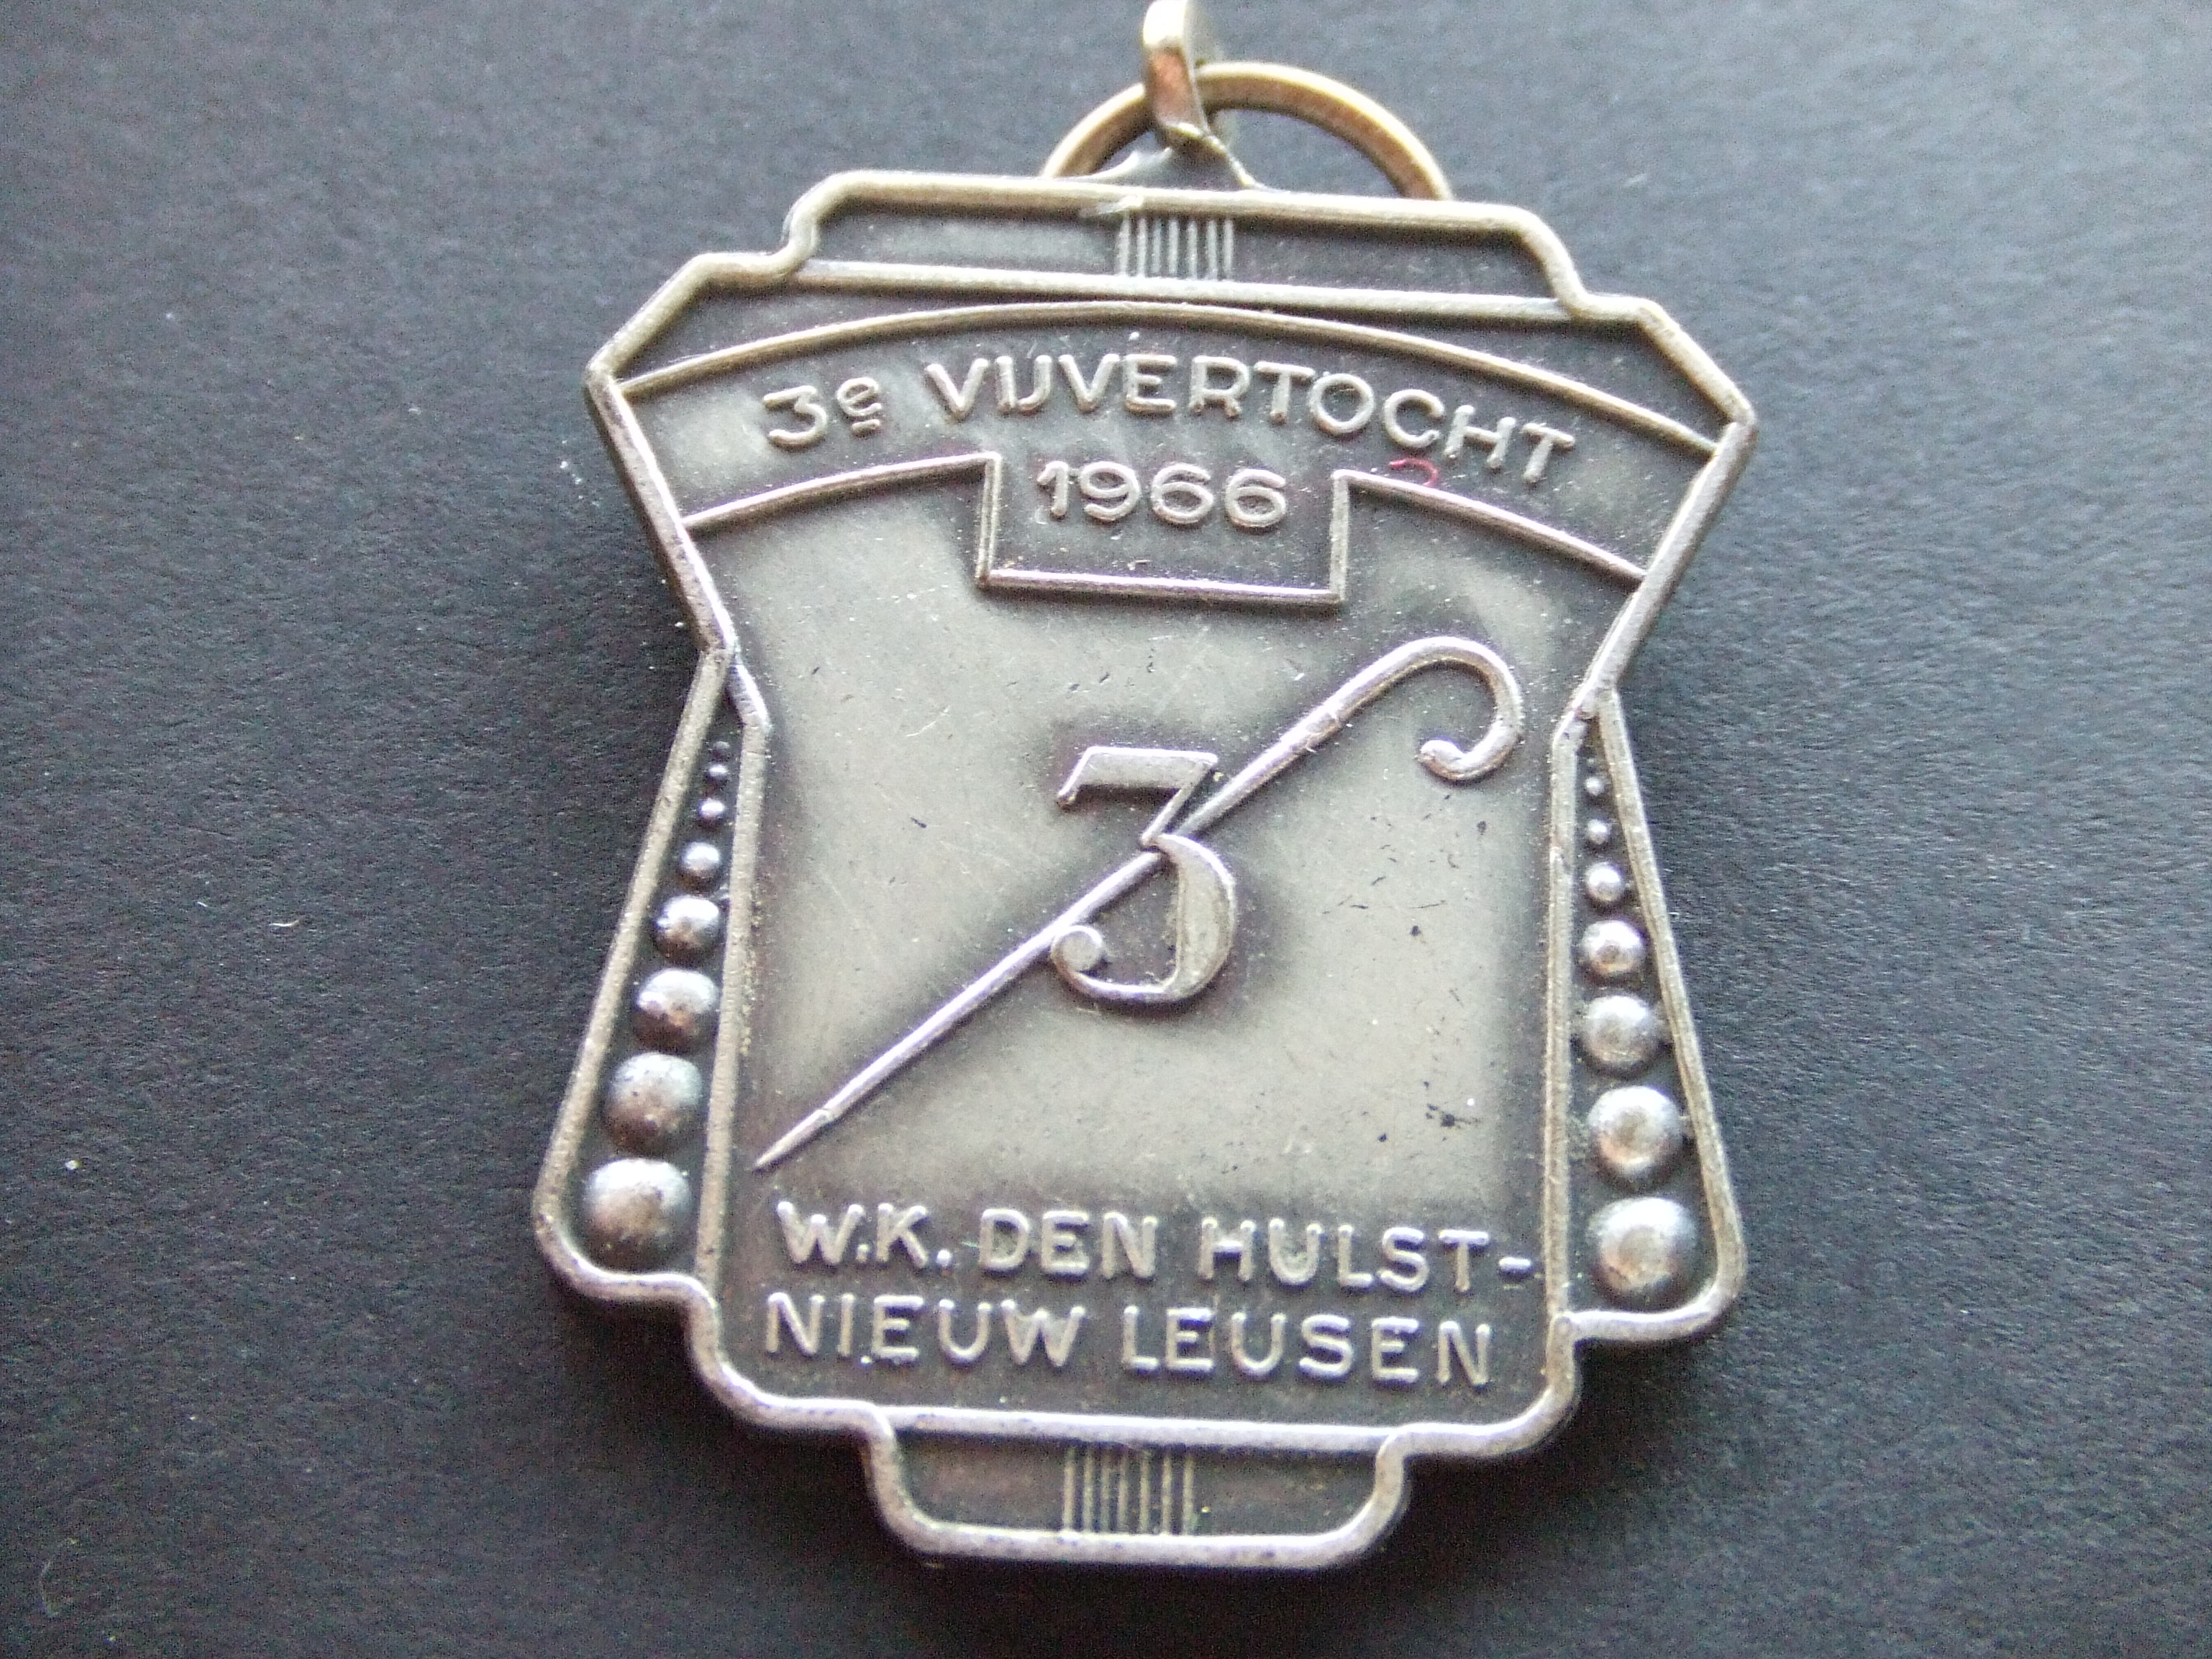 Wandelclub Den Hulst, Nieuwleusen Vijvertocht 1966